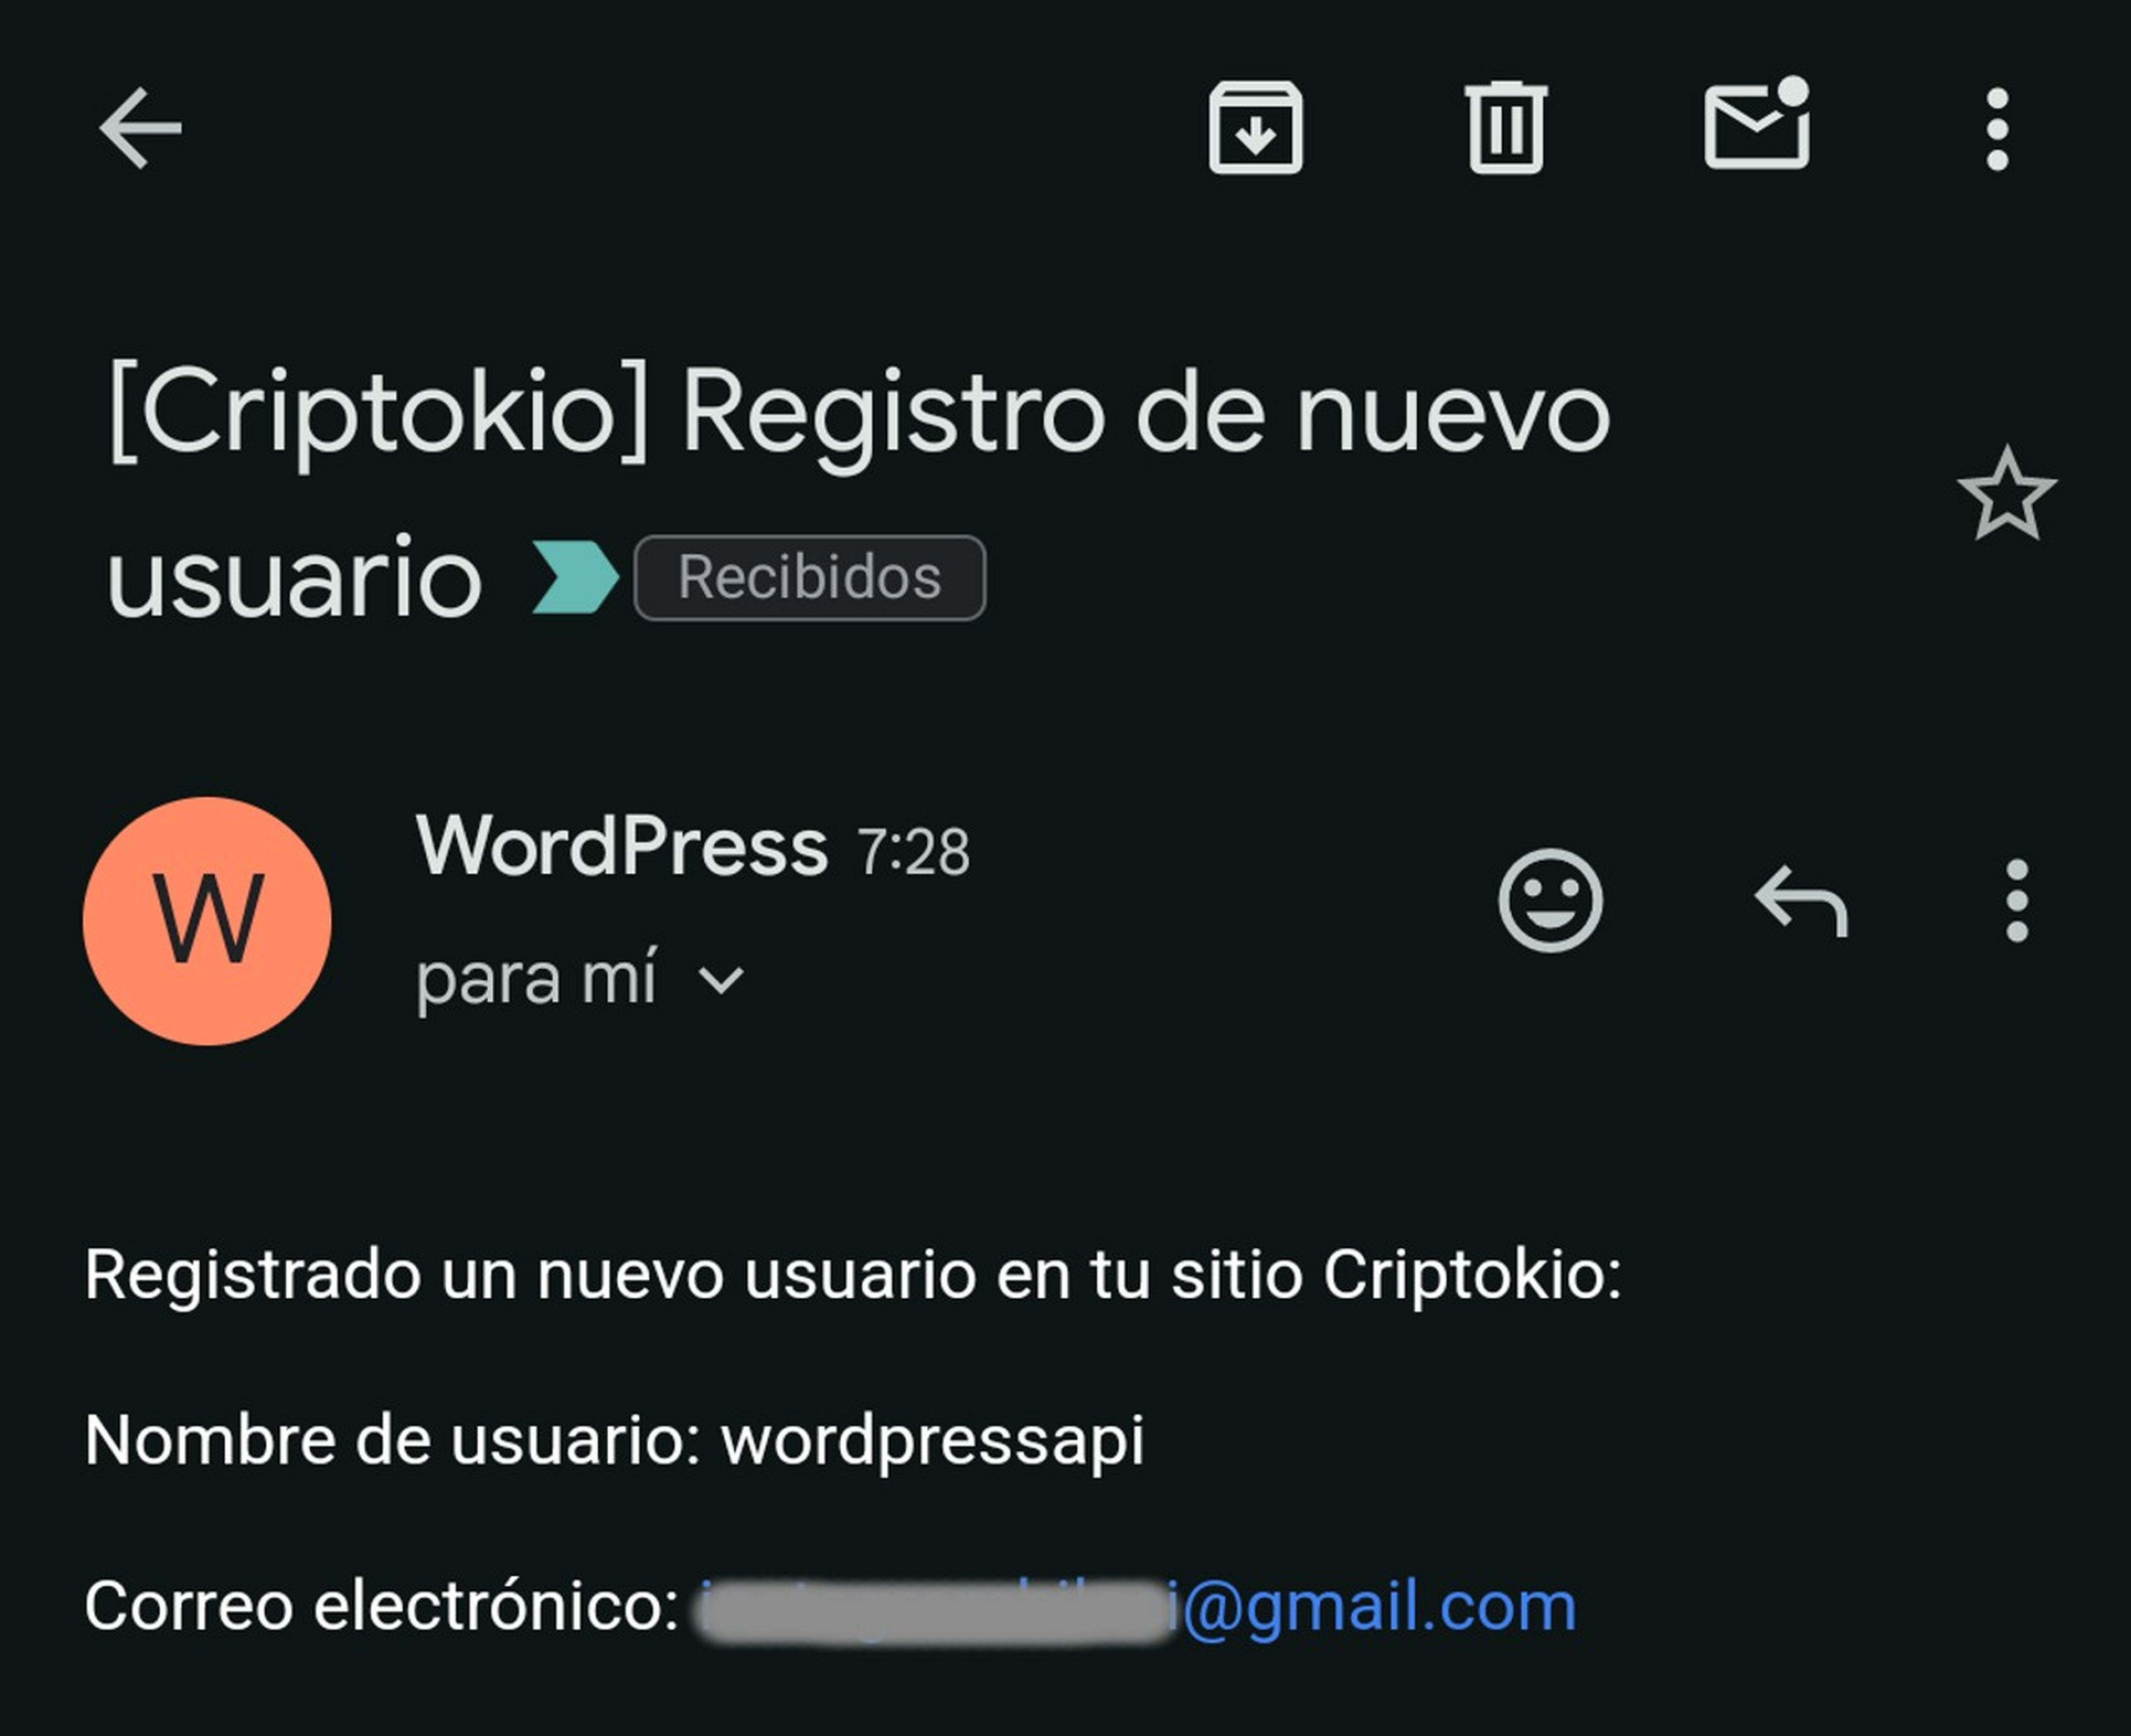 El correo que recibo alertándome de que alguien se ha registrado como nuevo usuario en mi WordPress.